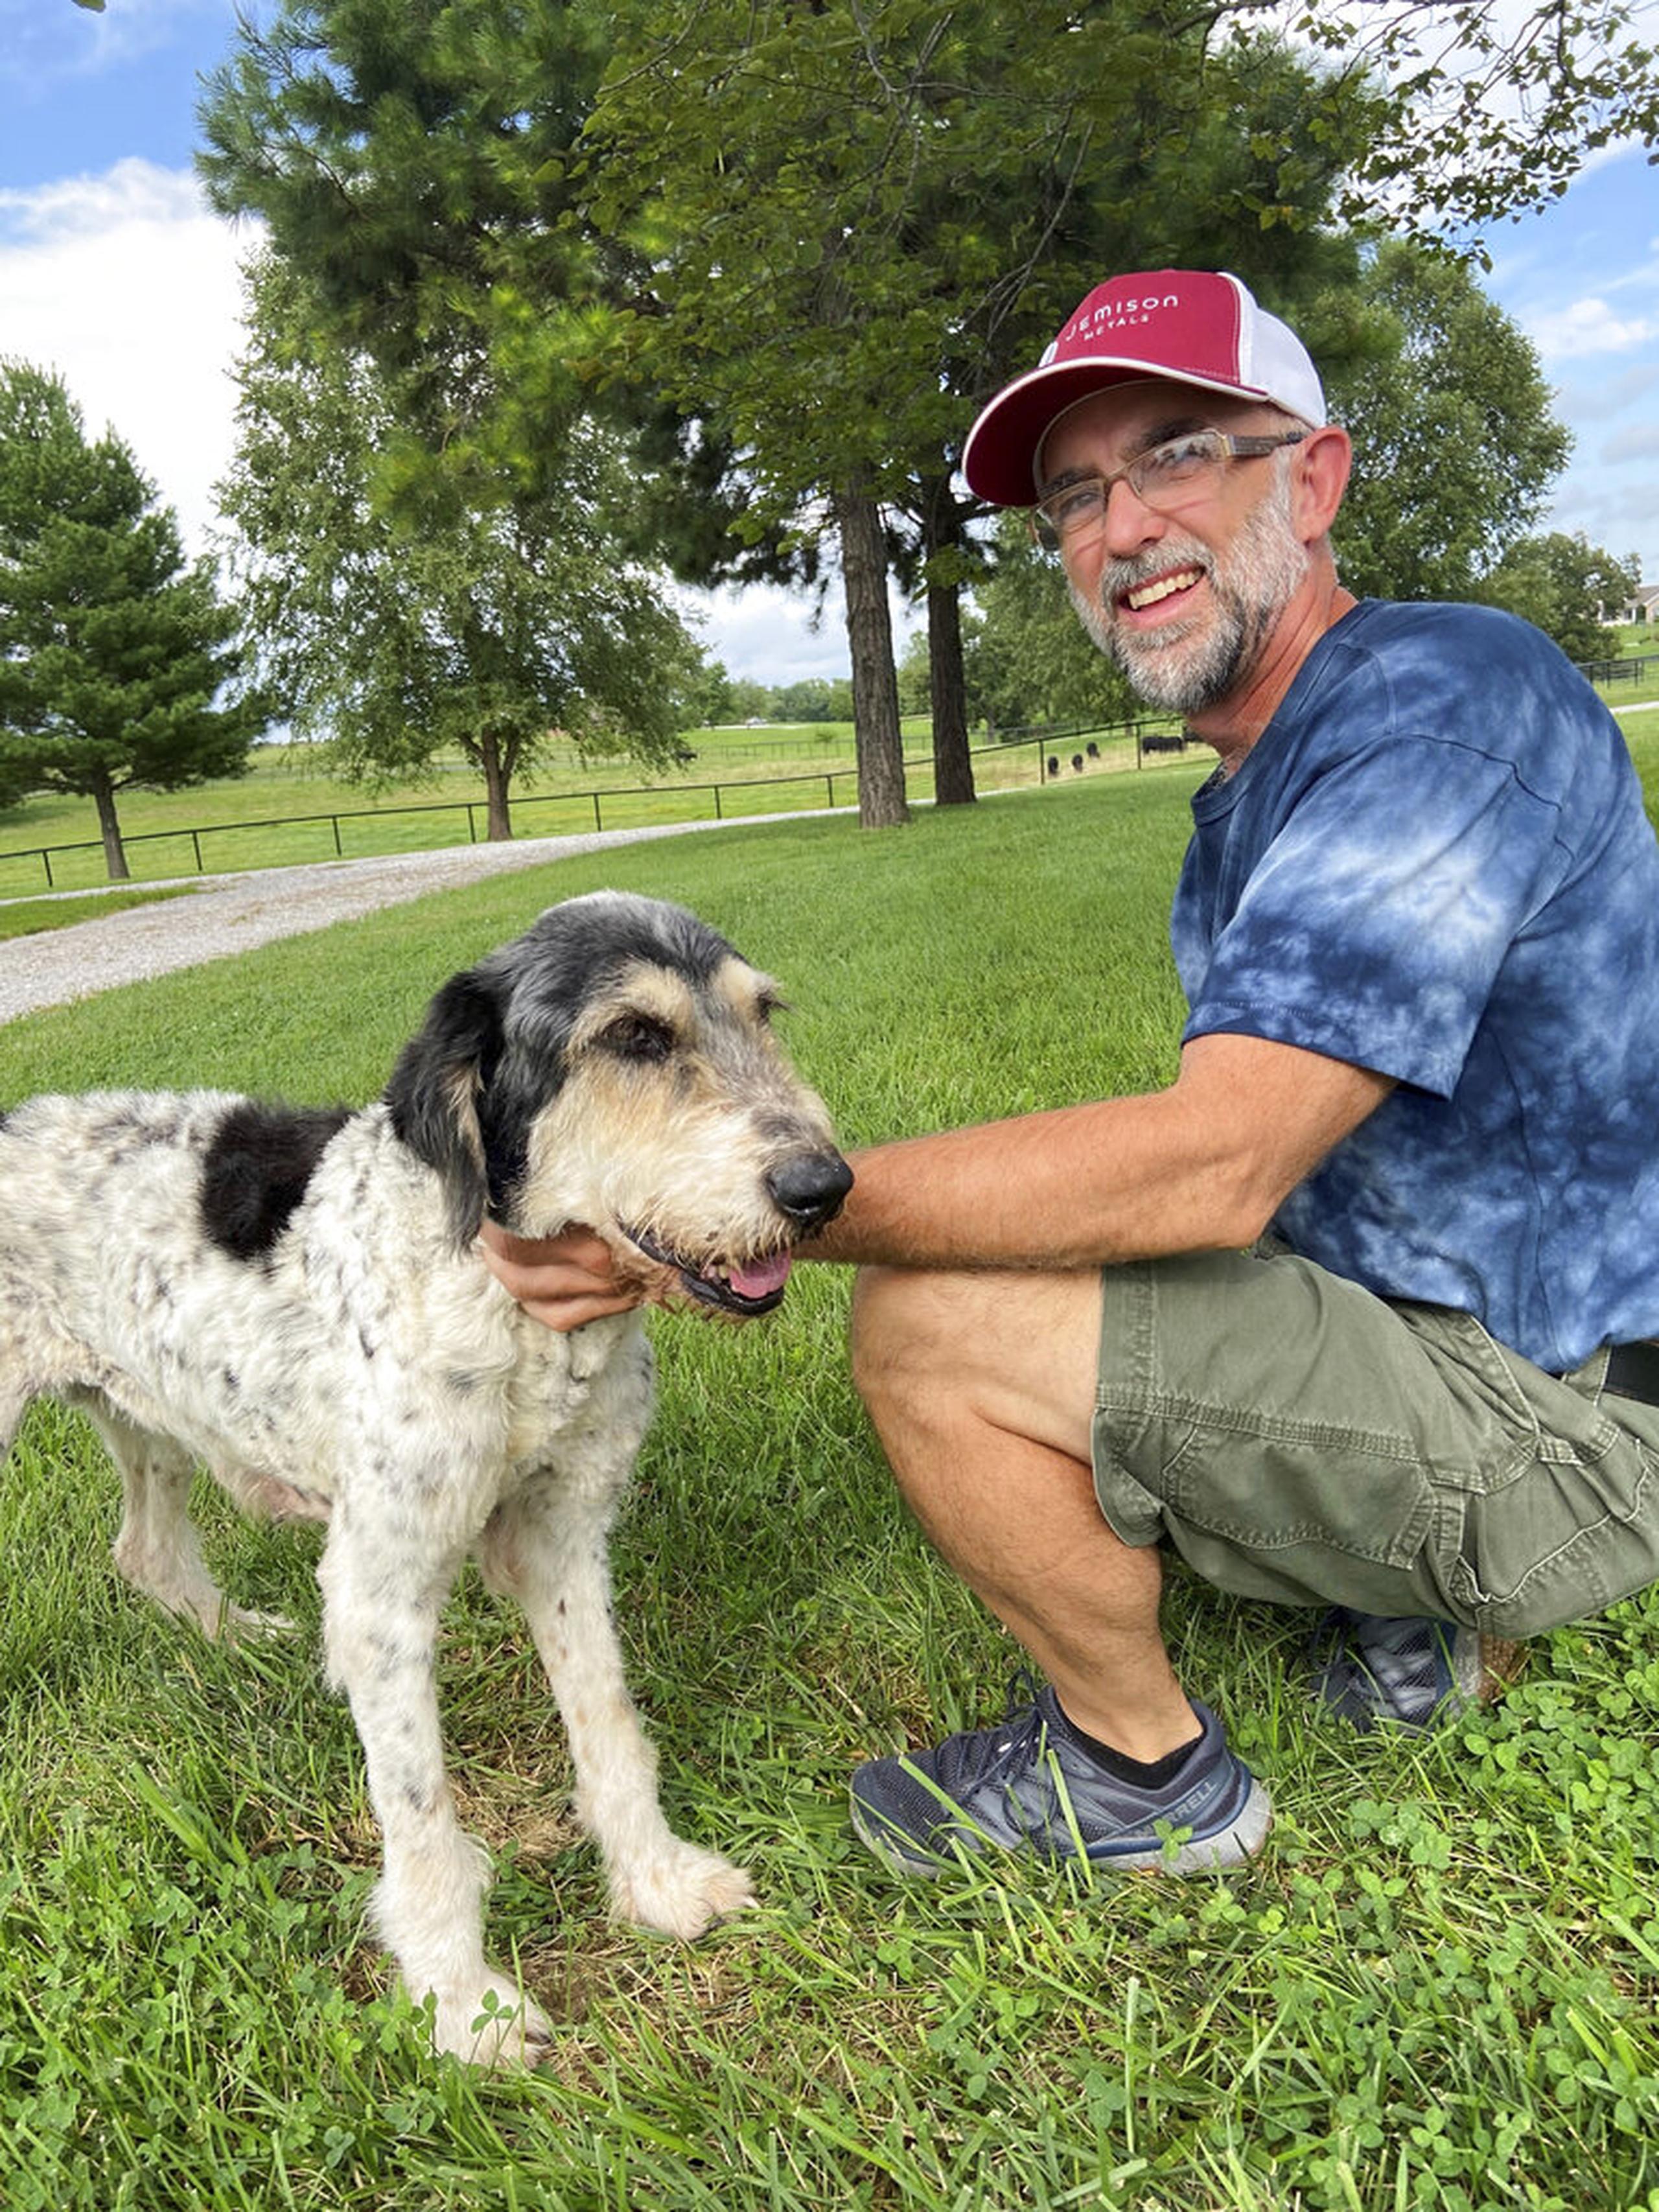 En esta imagen de agosto de 2022 proporcionada por Jeff Bohnert aparece él junto a su perra Abby, quien fue hallada viva en una cueva dos meses después de haber desaparecido.